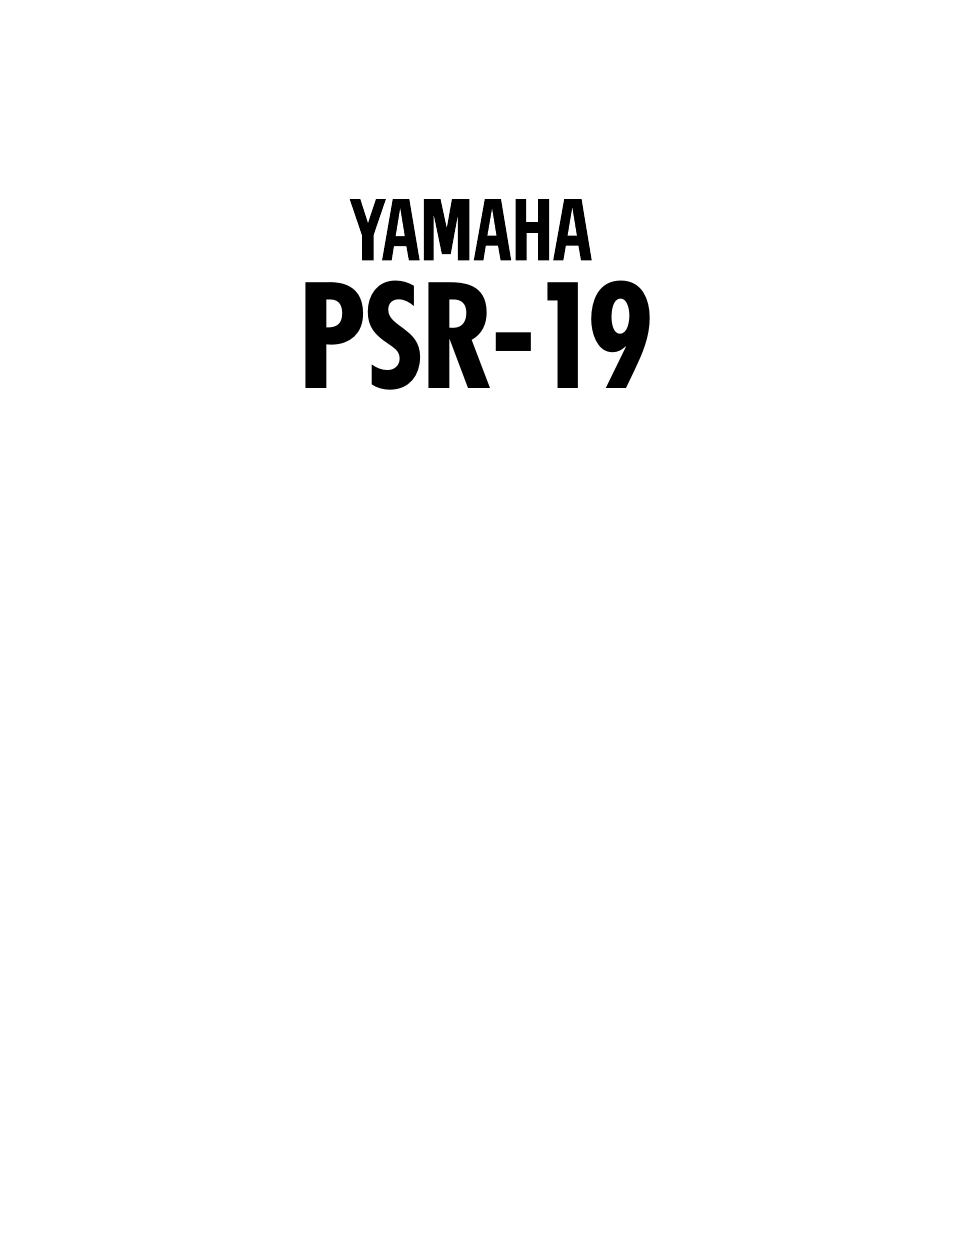 Yamaha PSR-19 User Manual | 11 pages